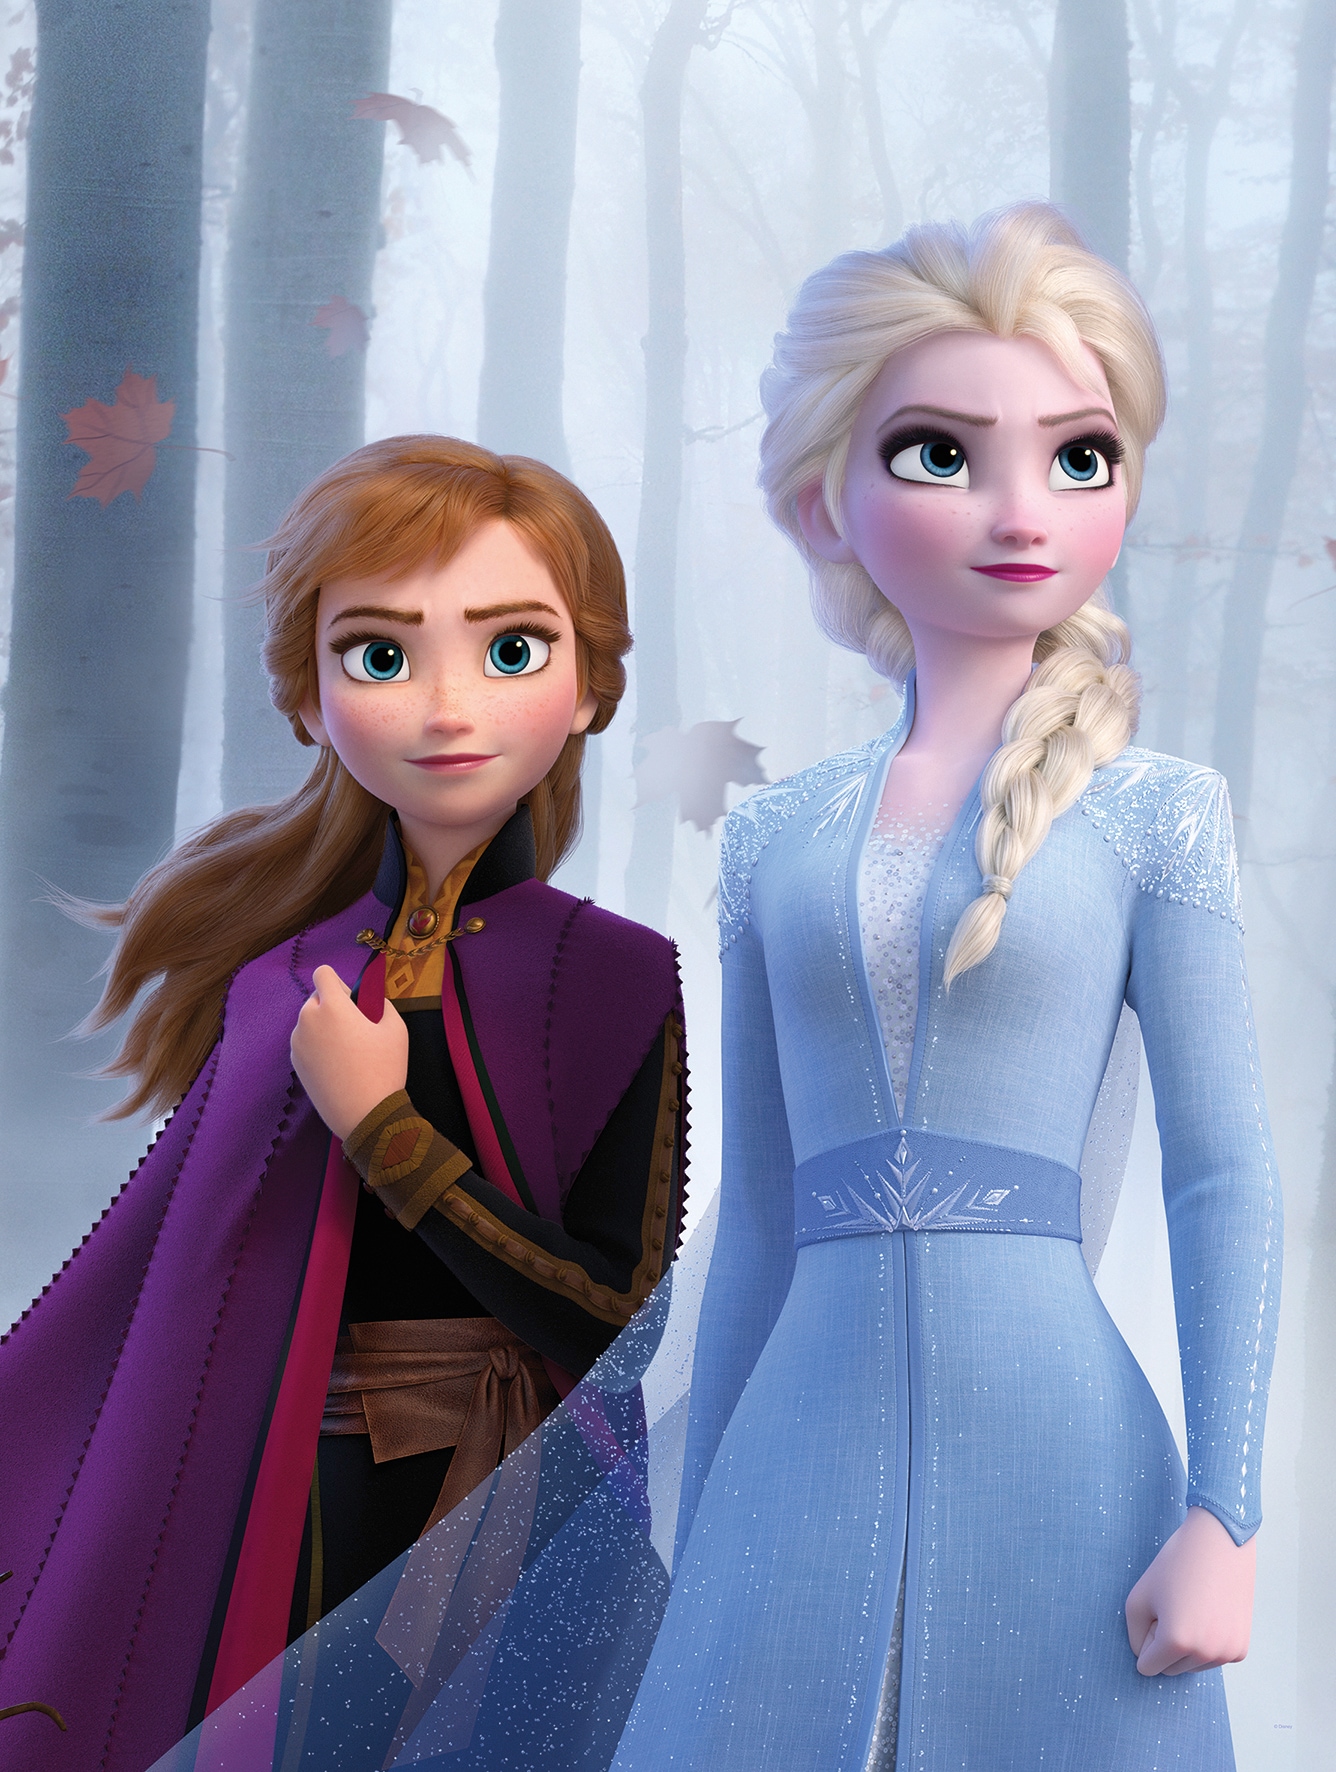 Komar Poster »Frozen Sisters in the Wood«, Disney, (1 St.), Kinderzimmer, Schlafzimmer, Wohnzimmer